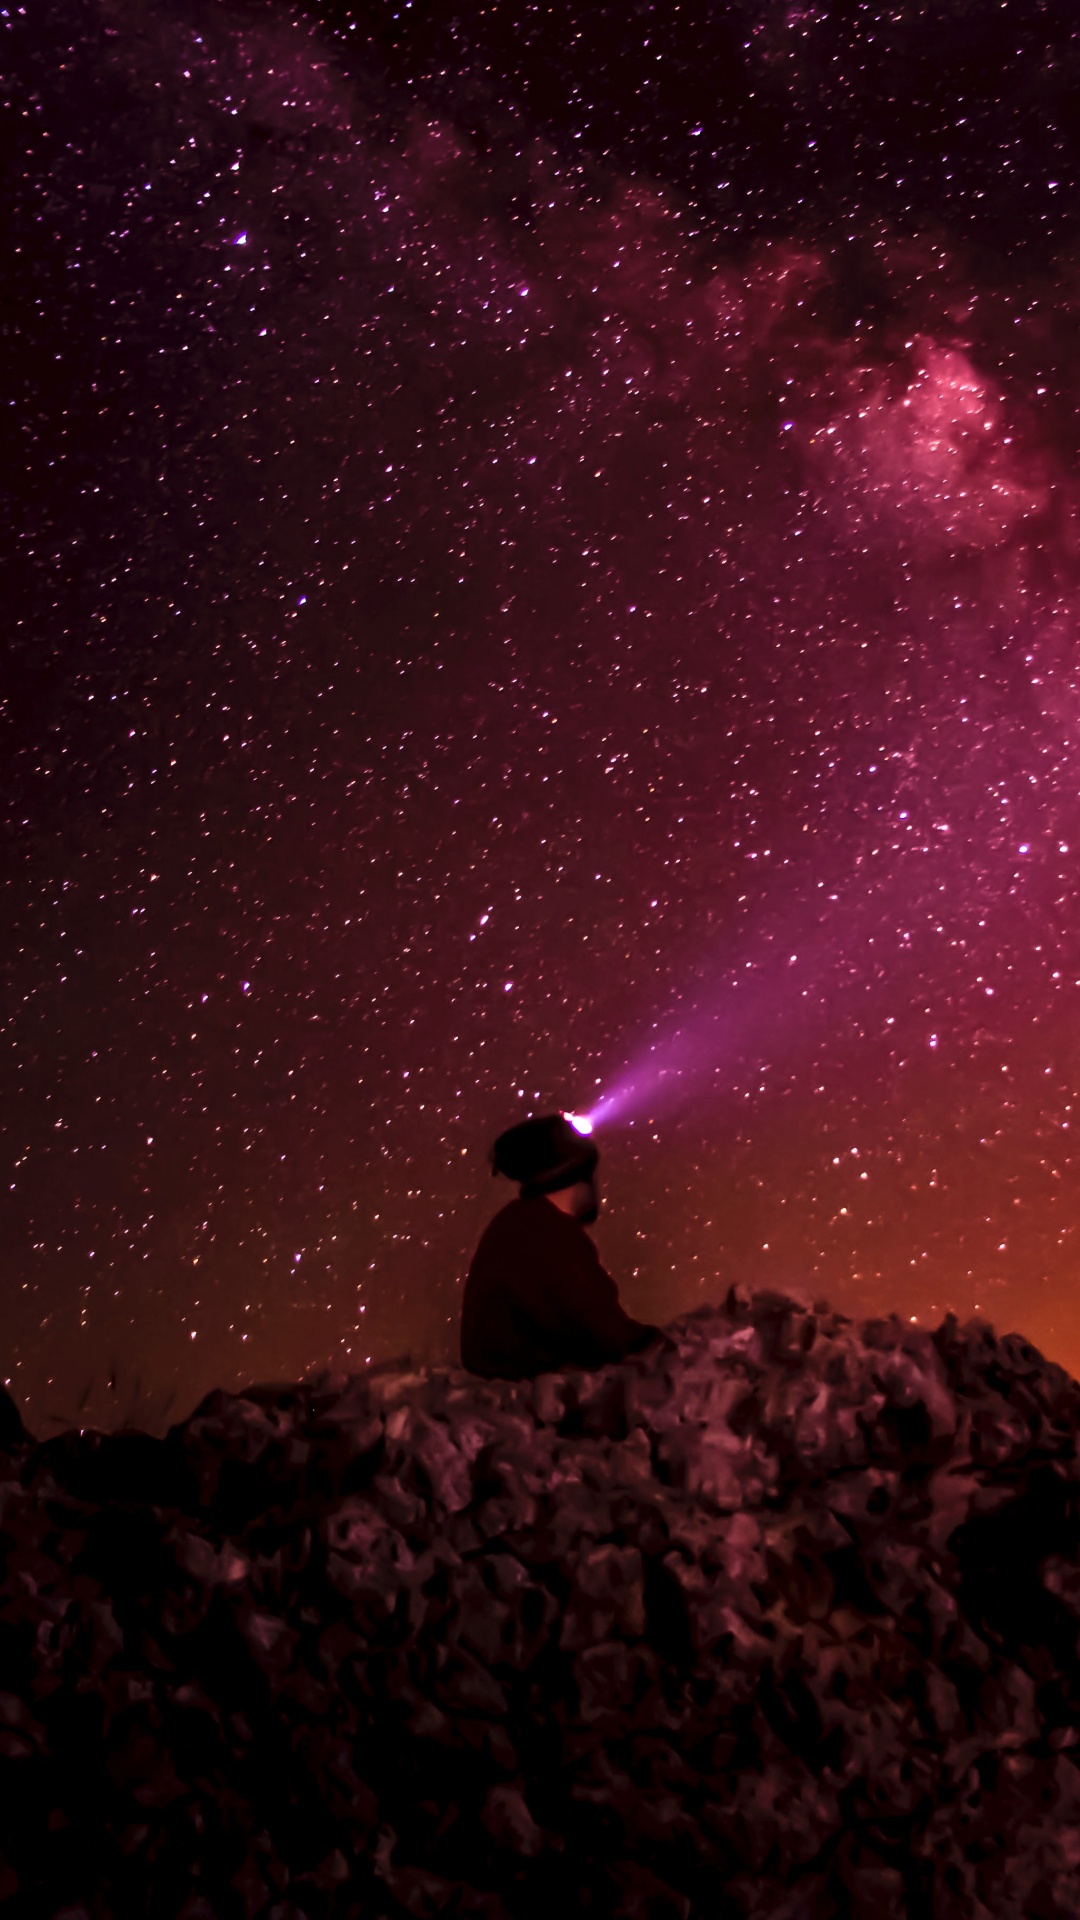 Homme Assis Sur un Rocher Sous la Nuit Étoilée. Wallpaper in 1080x1920 Resolution